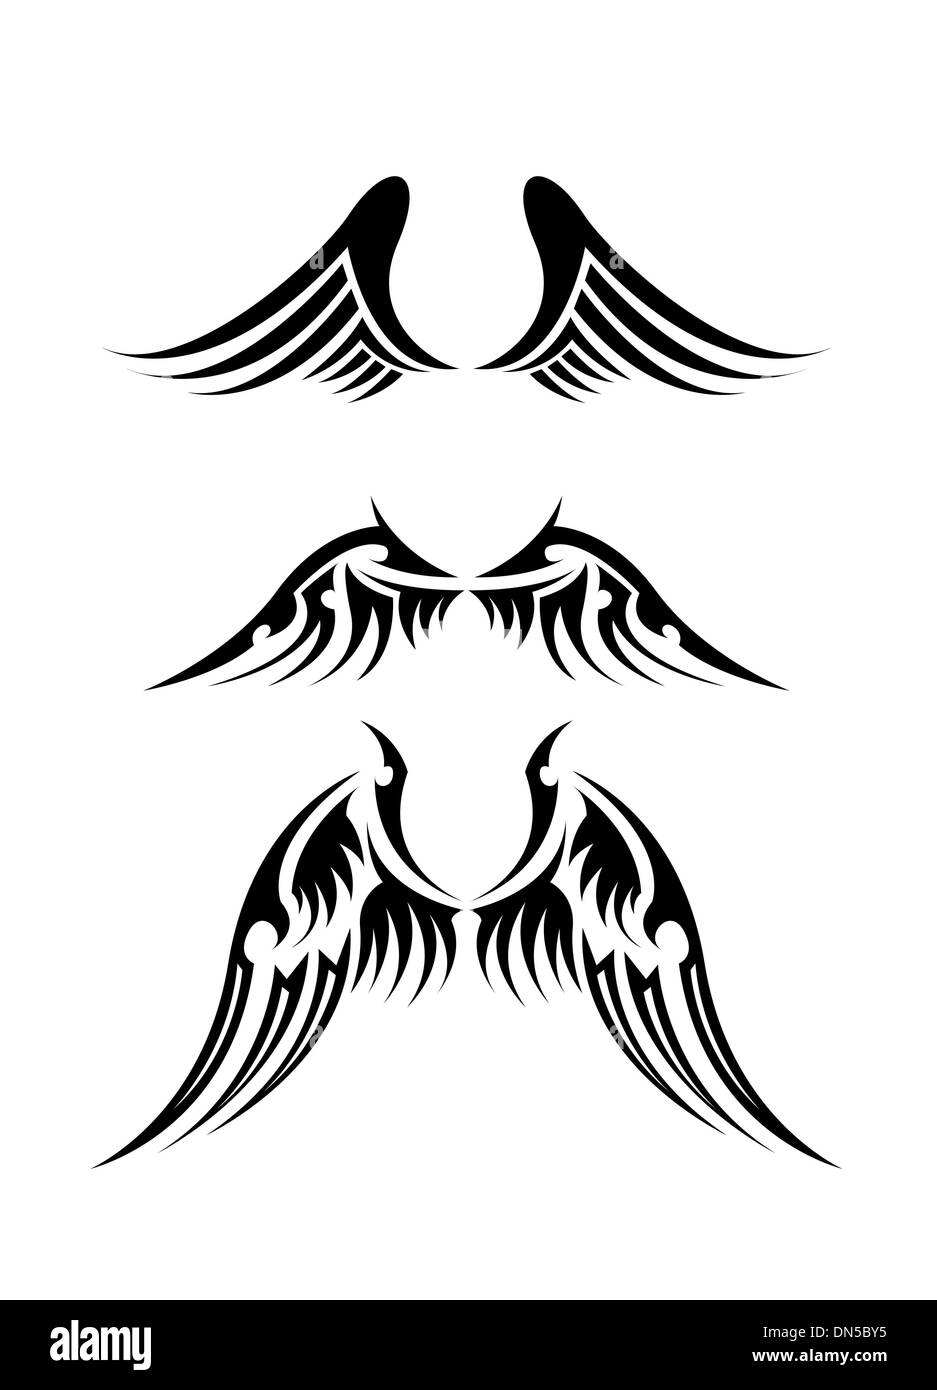 Conjunto de iconos de alas blancas negras. alas de angel. alas de plumas.  ilustración vectorial